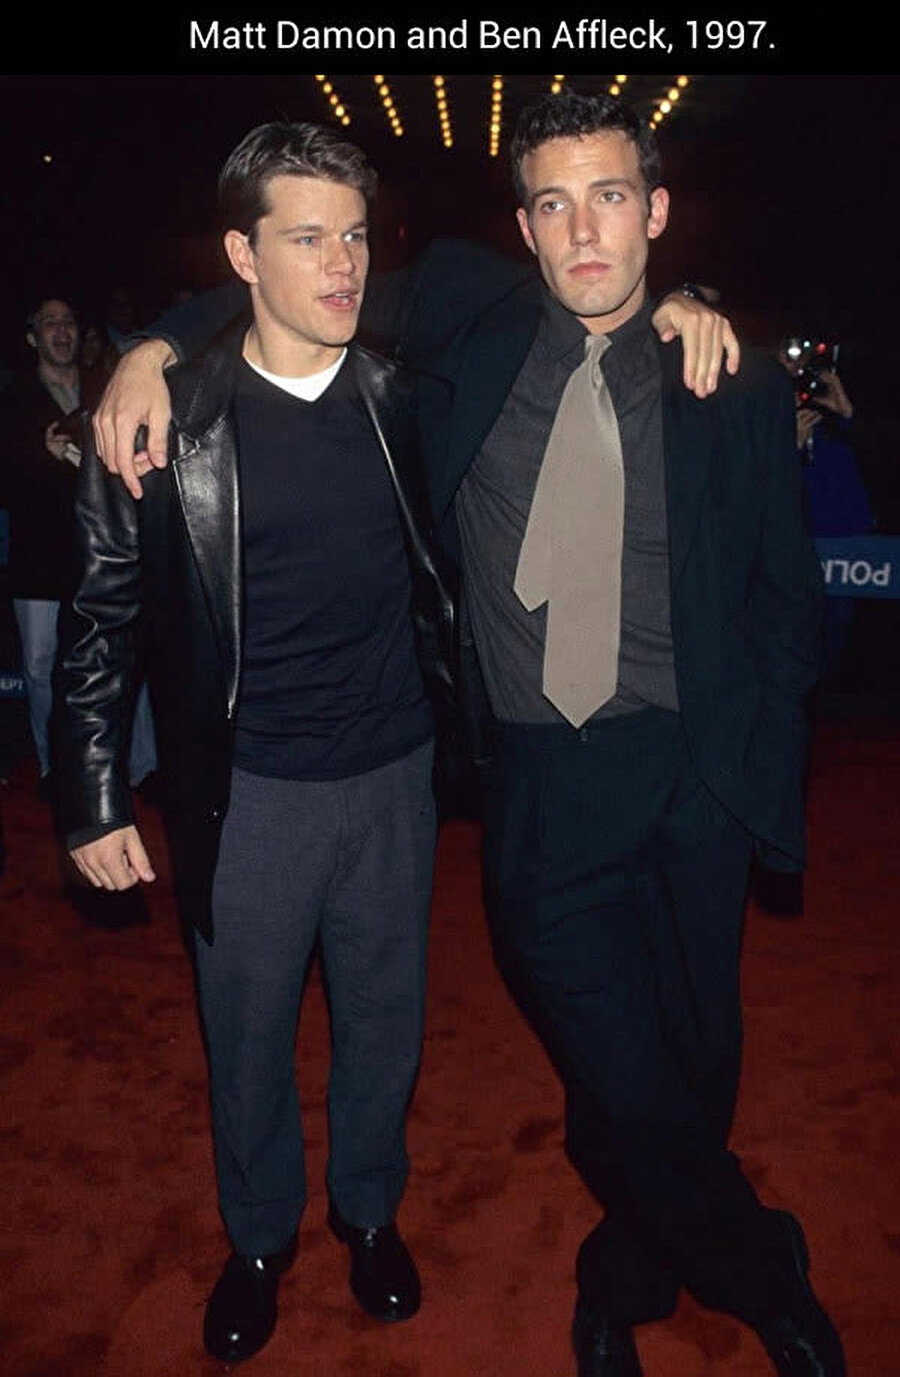 Matt Damon & Ben Affleck (1997)
